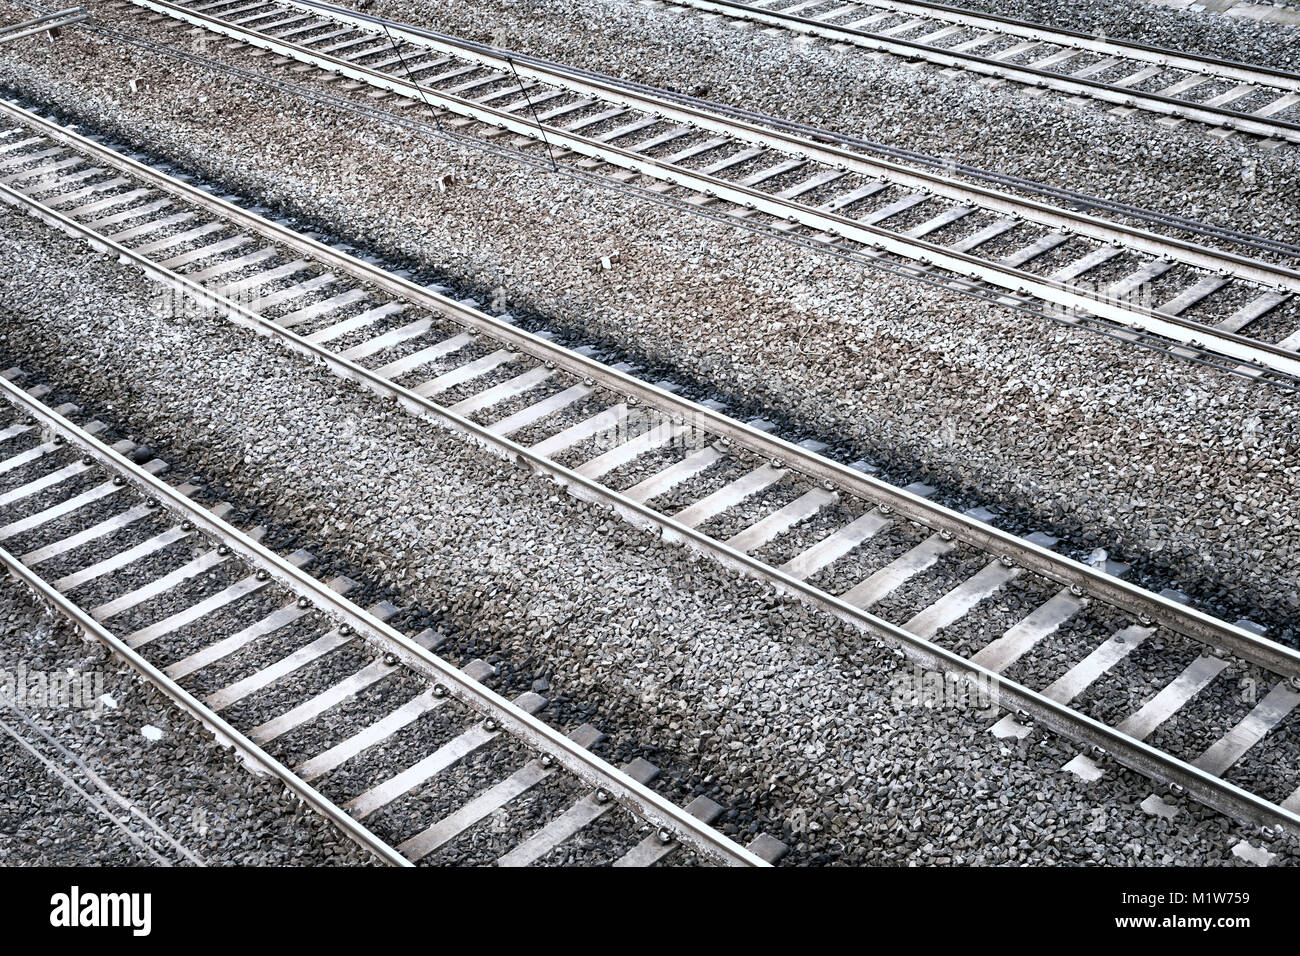 Cuatro rectas las vías de ferrocarril. Vista en perspectiva aérea. Foto de stock